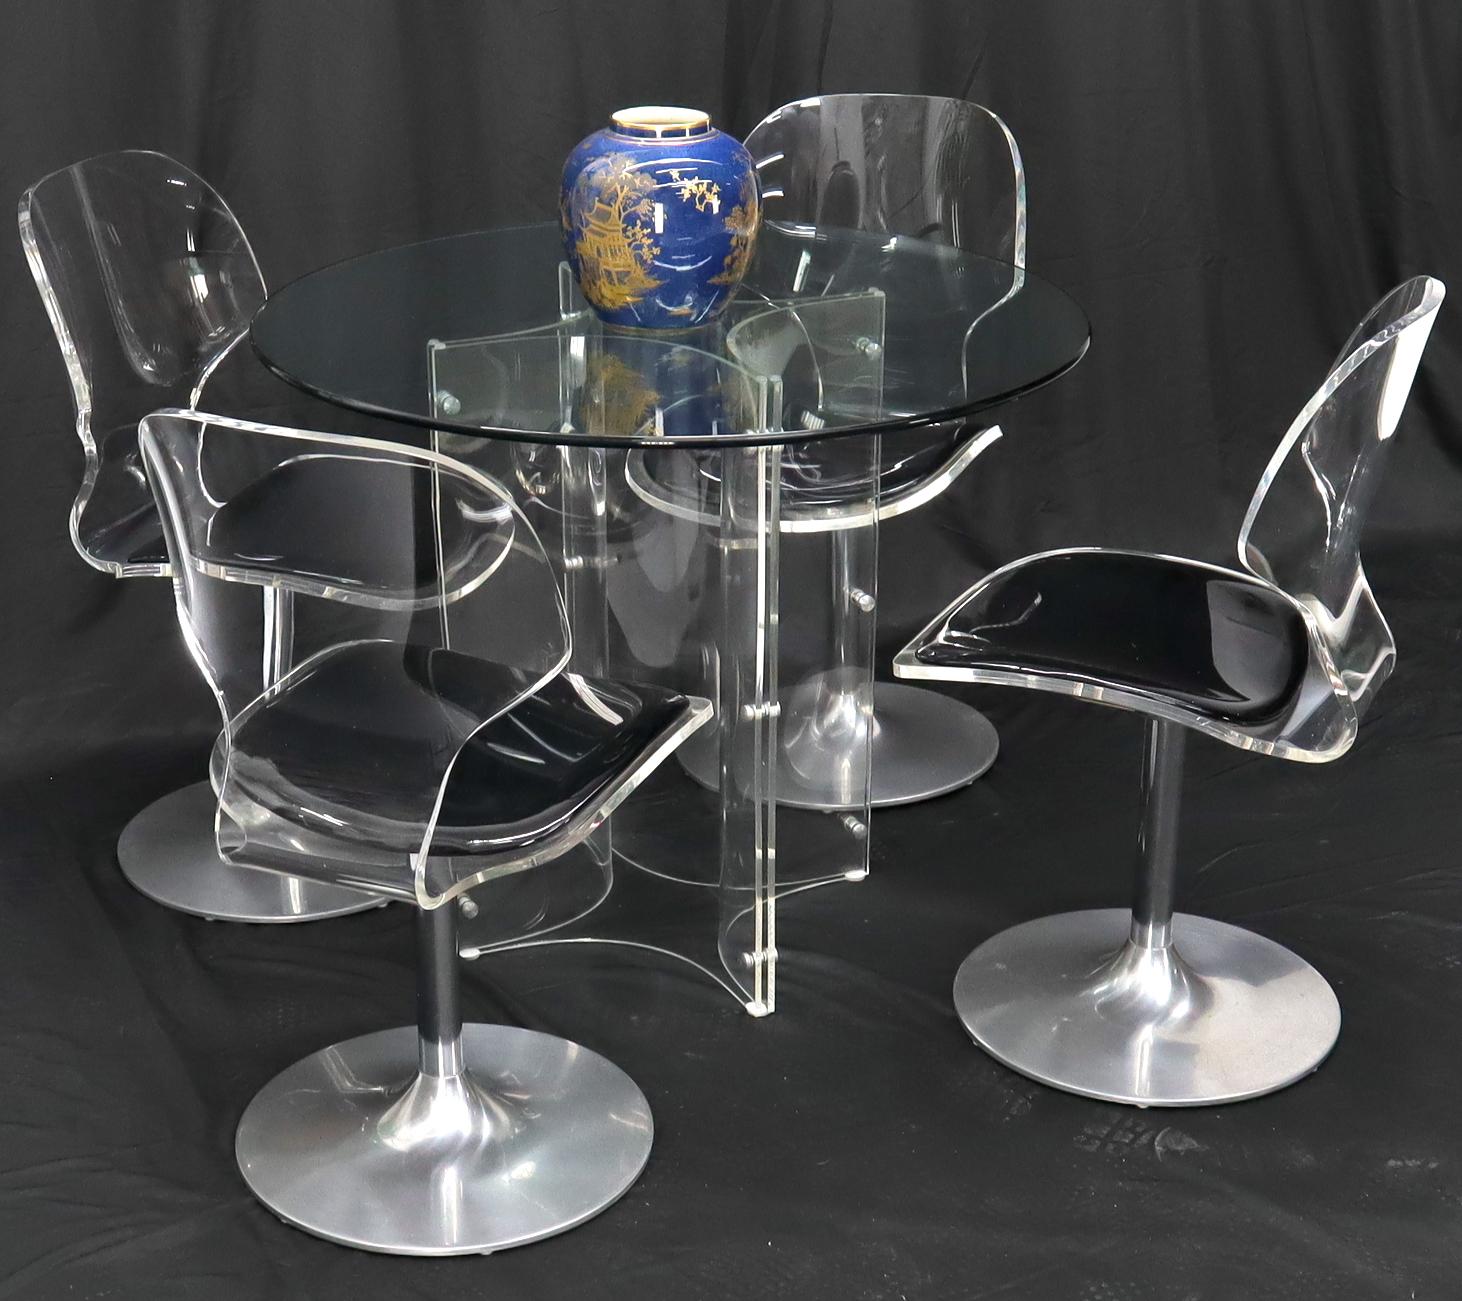 Superbes chaises en Lucite et tulipe chromées, de style moderne du milieu du siècle, assorties à une table ronde en verre de 36 pouces de diamètre et 29 pouces de hauteur. Revêtement en cuir verni noir brillant.